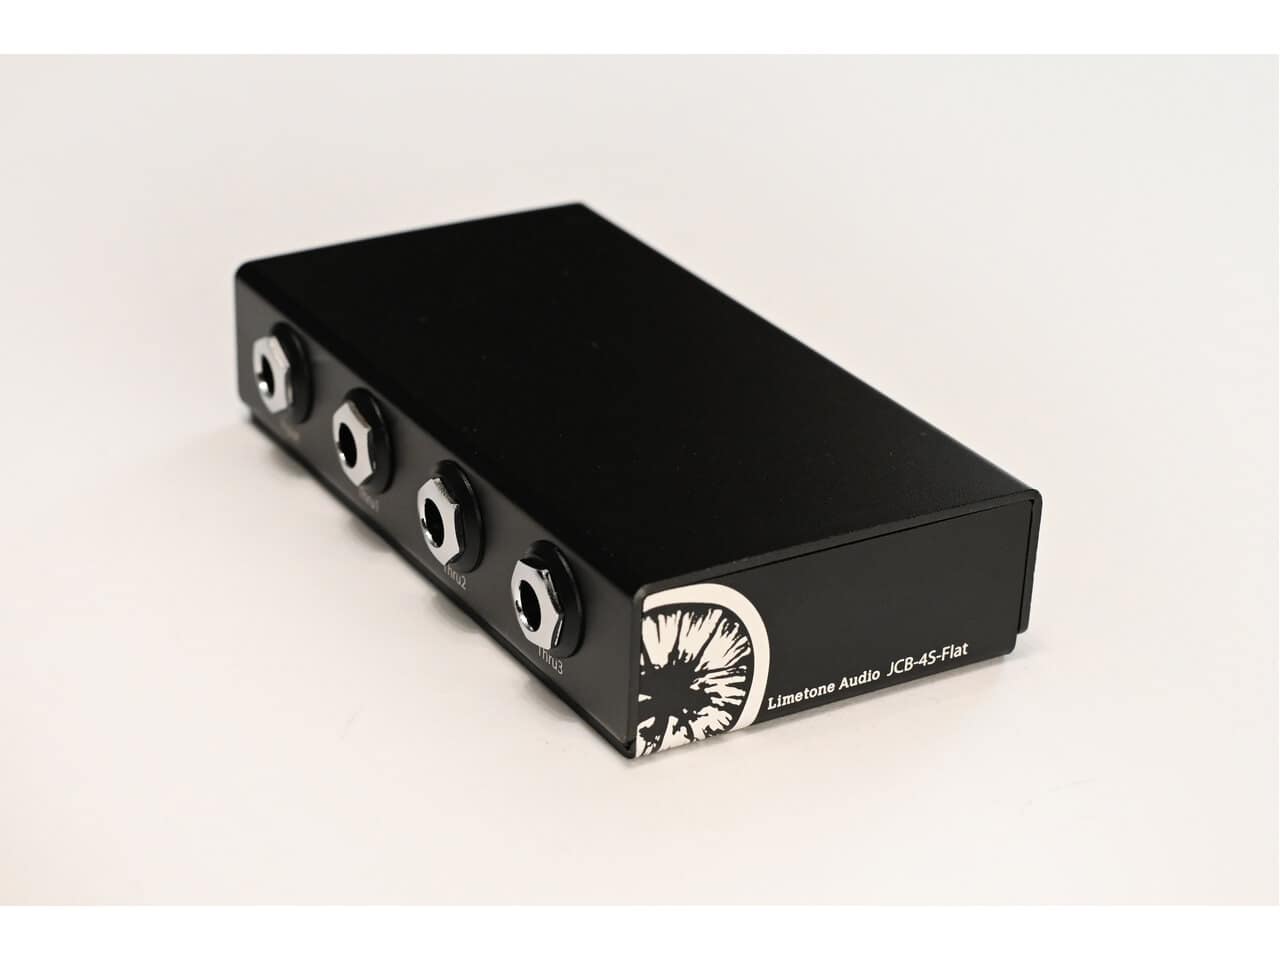 Limetone Audio JCB-4S-Flat ジャンクションボックス アクセサリー・パーツ | yoursailboatshop.com